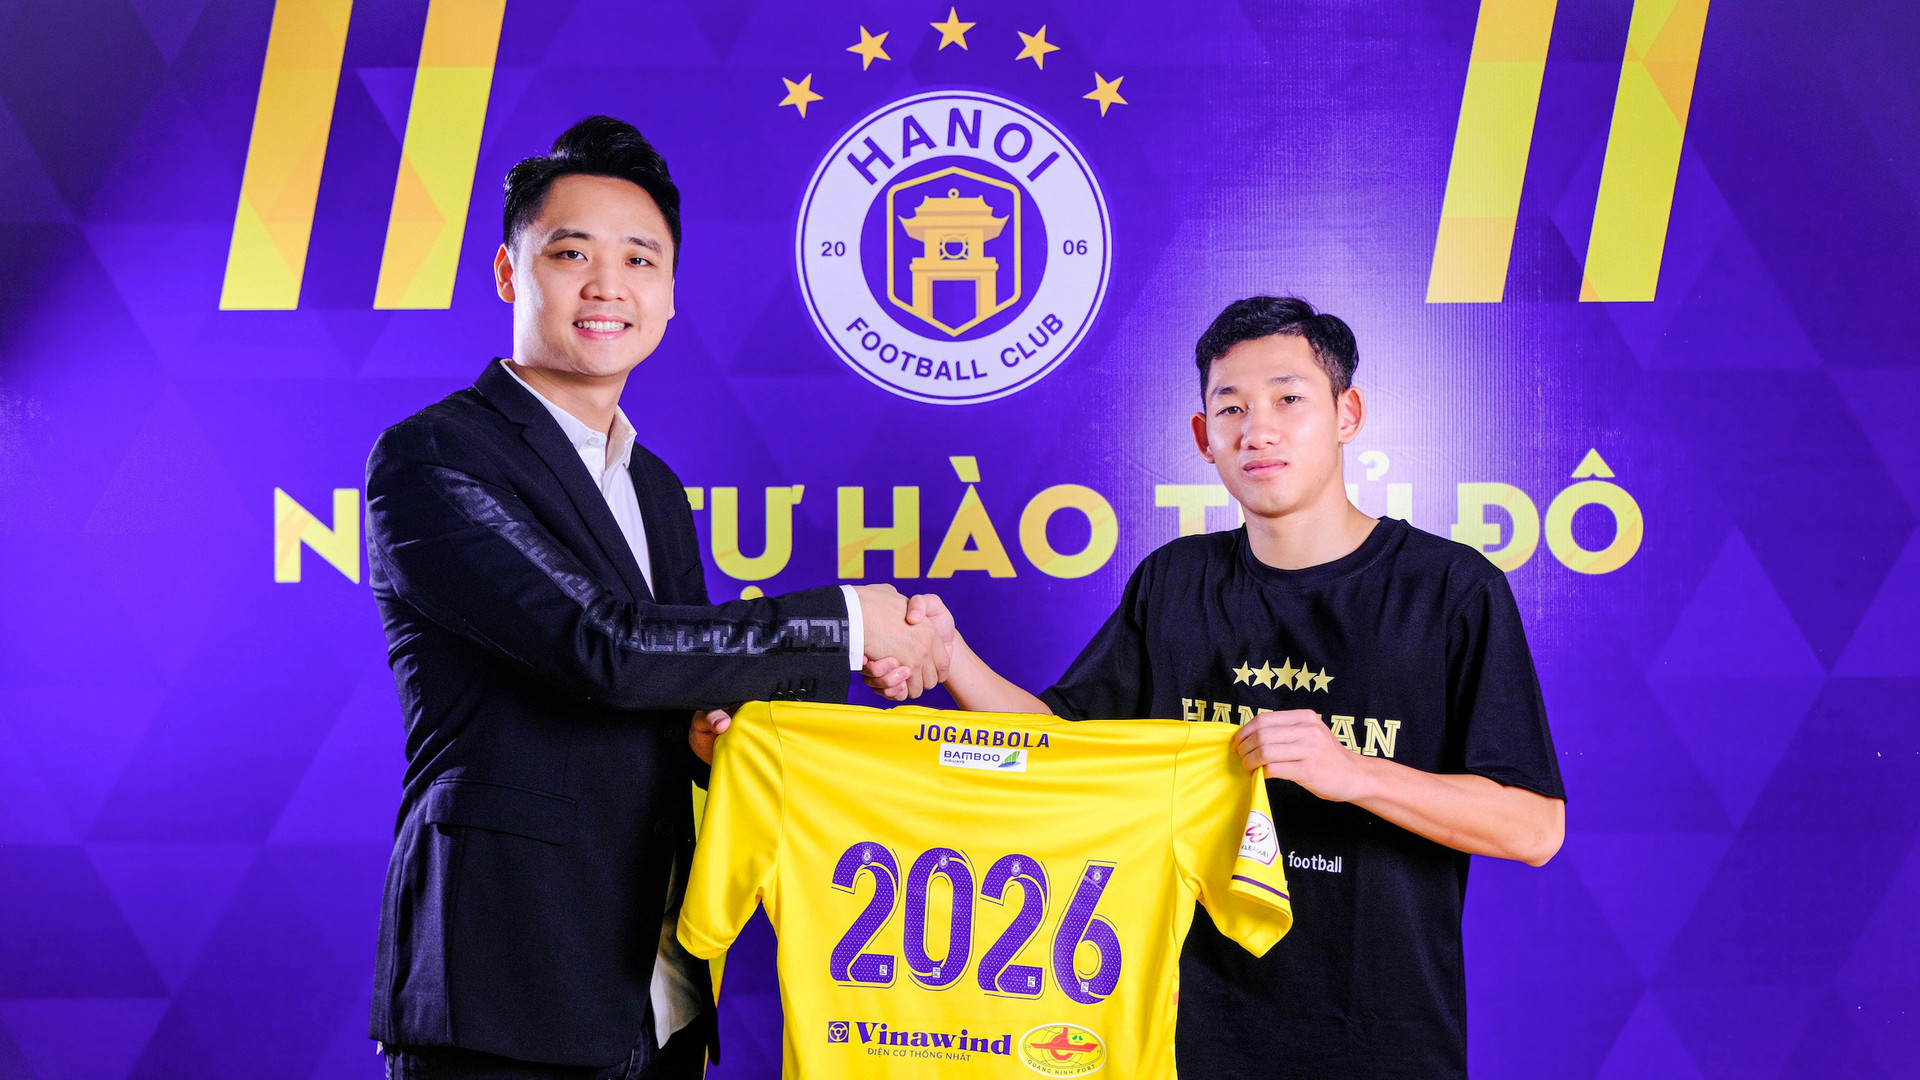 Chia tay loạt cầu thủ, Hà Nội FC cải tổ mạnh mẽ trước V-League 2022 - 2